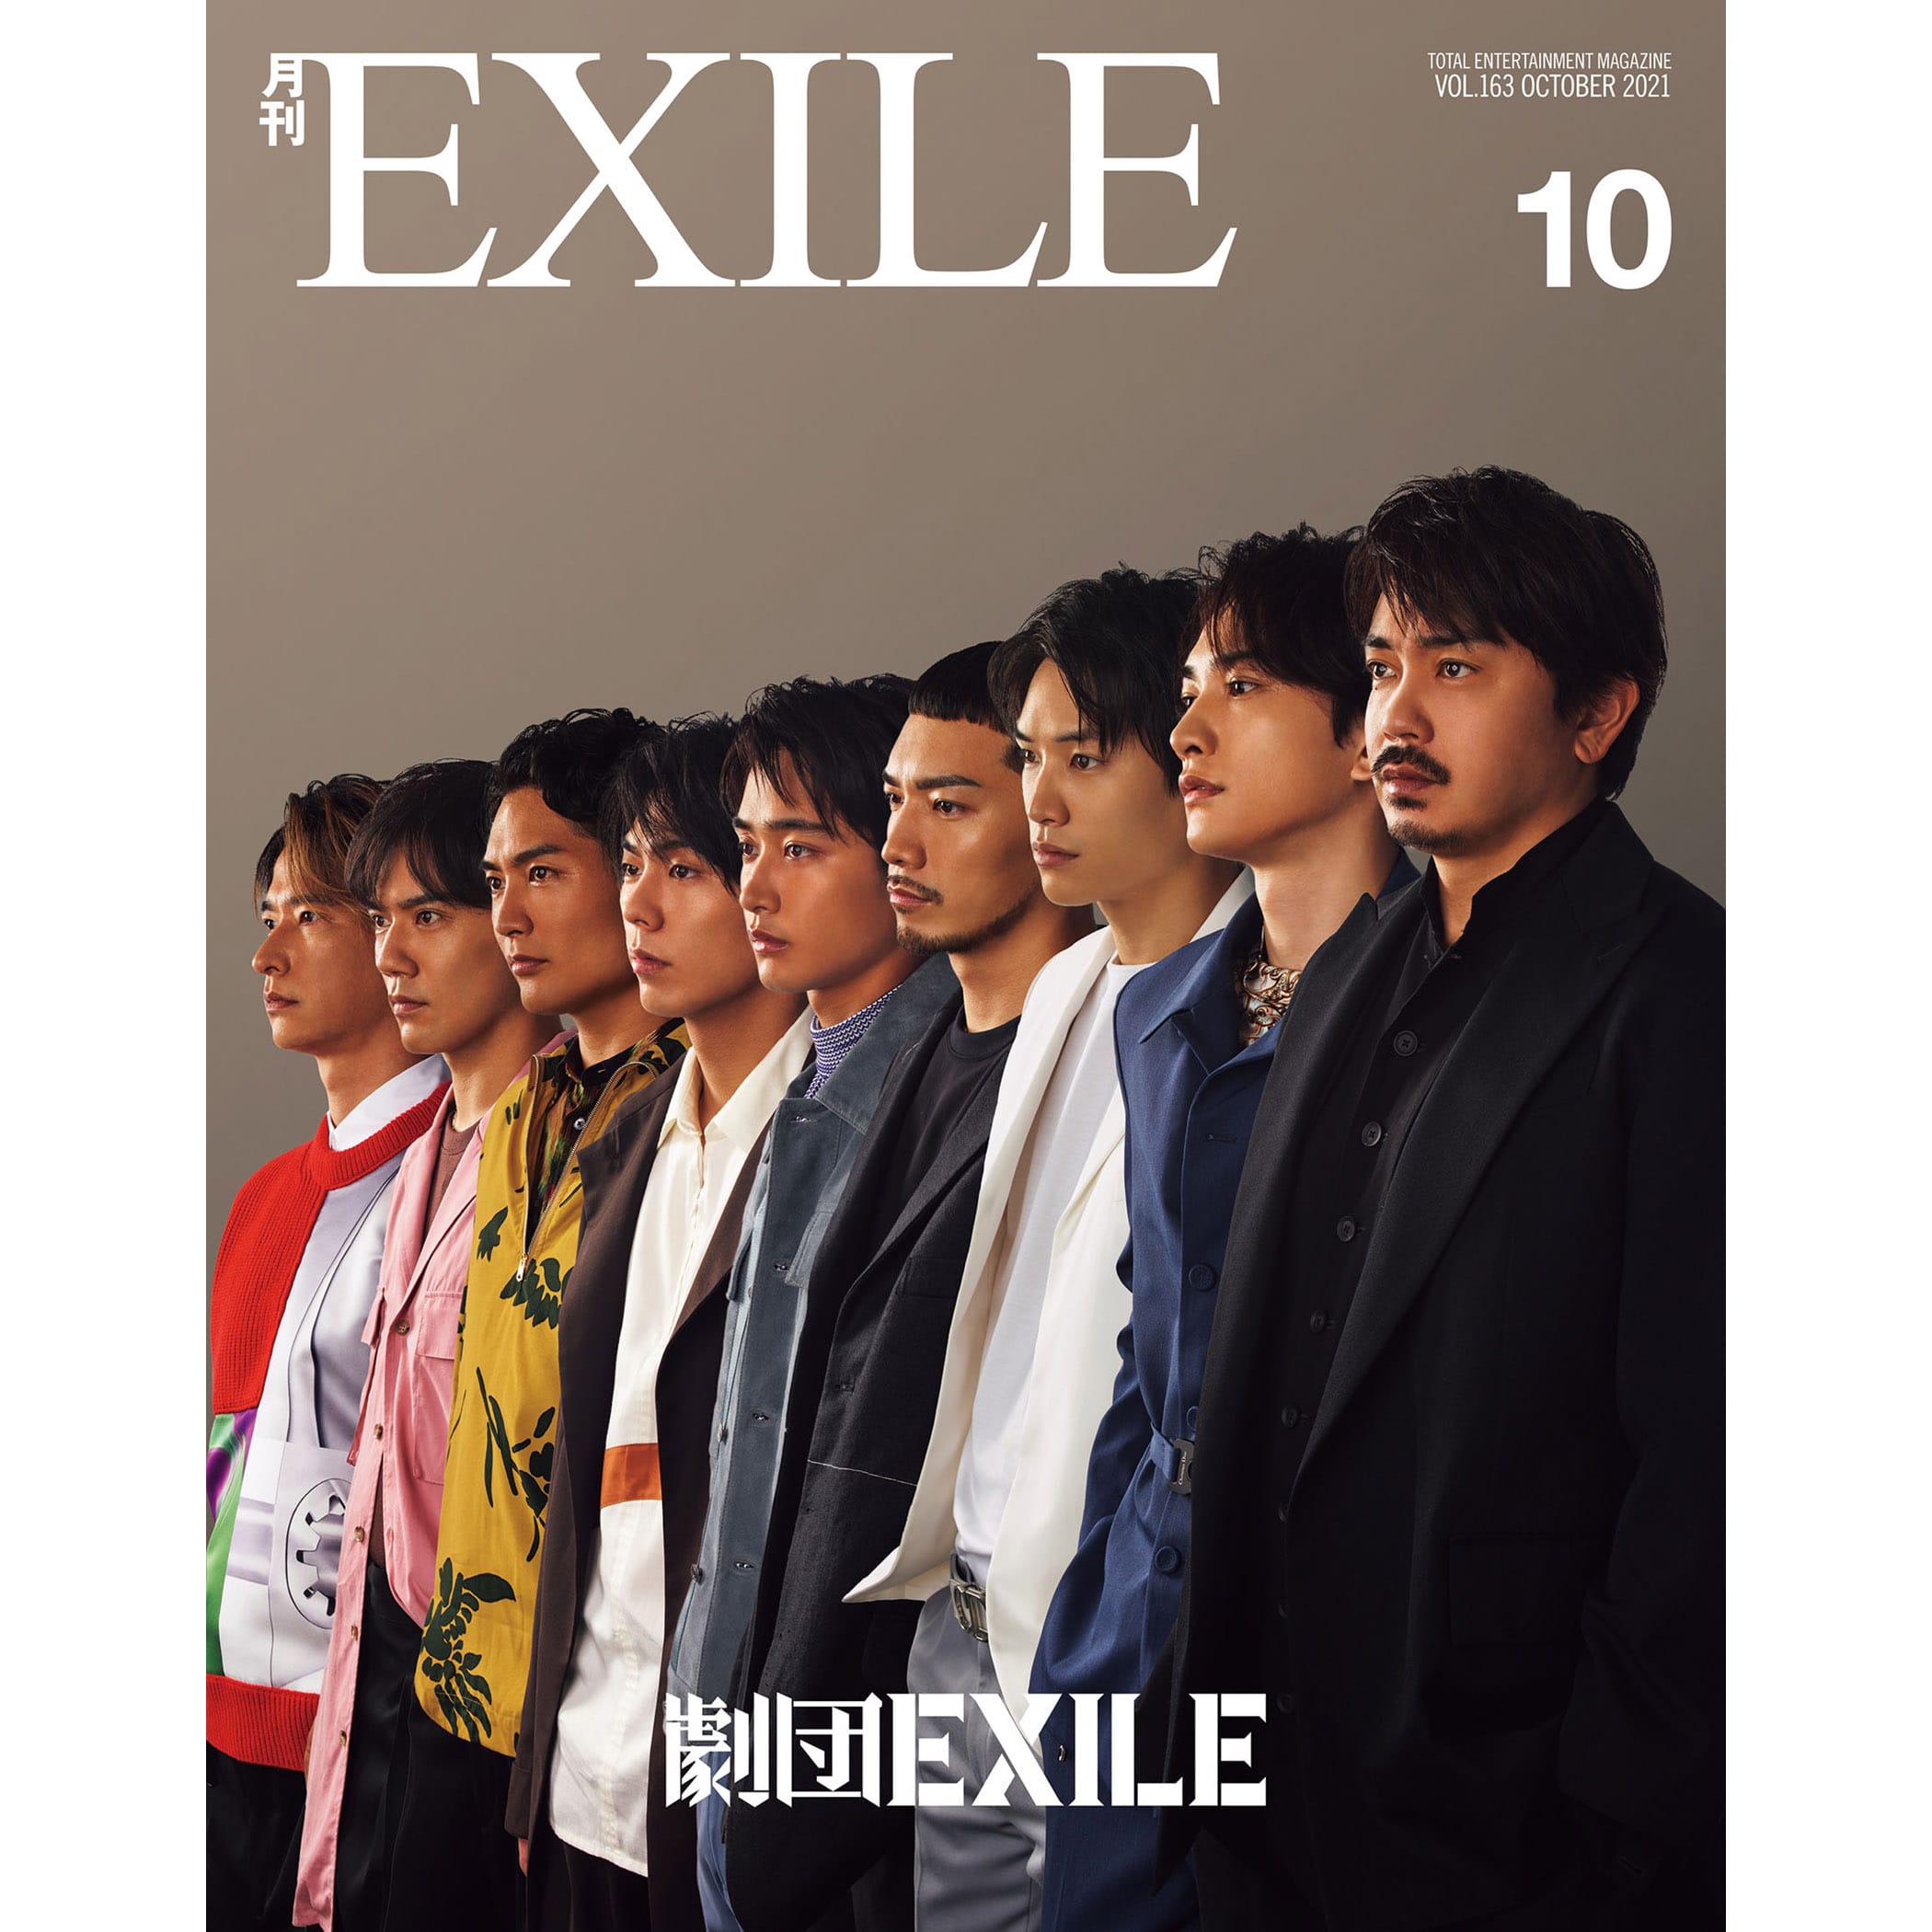 あります 月刊EXILE vol.1の8月号〜12冊 xP2TL-m20524762450 までの